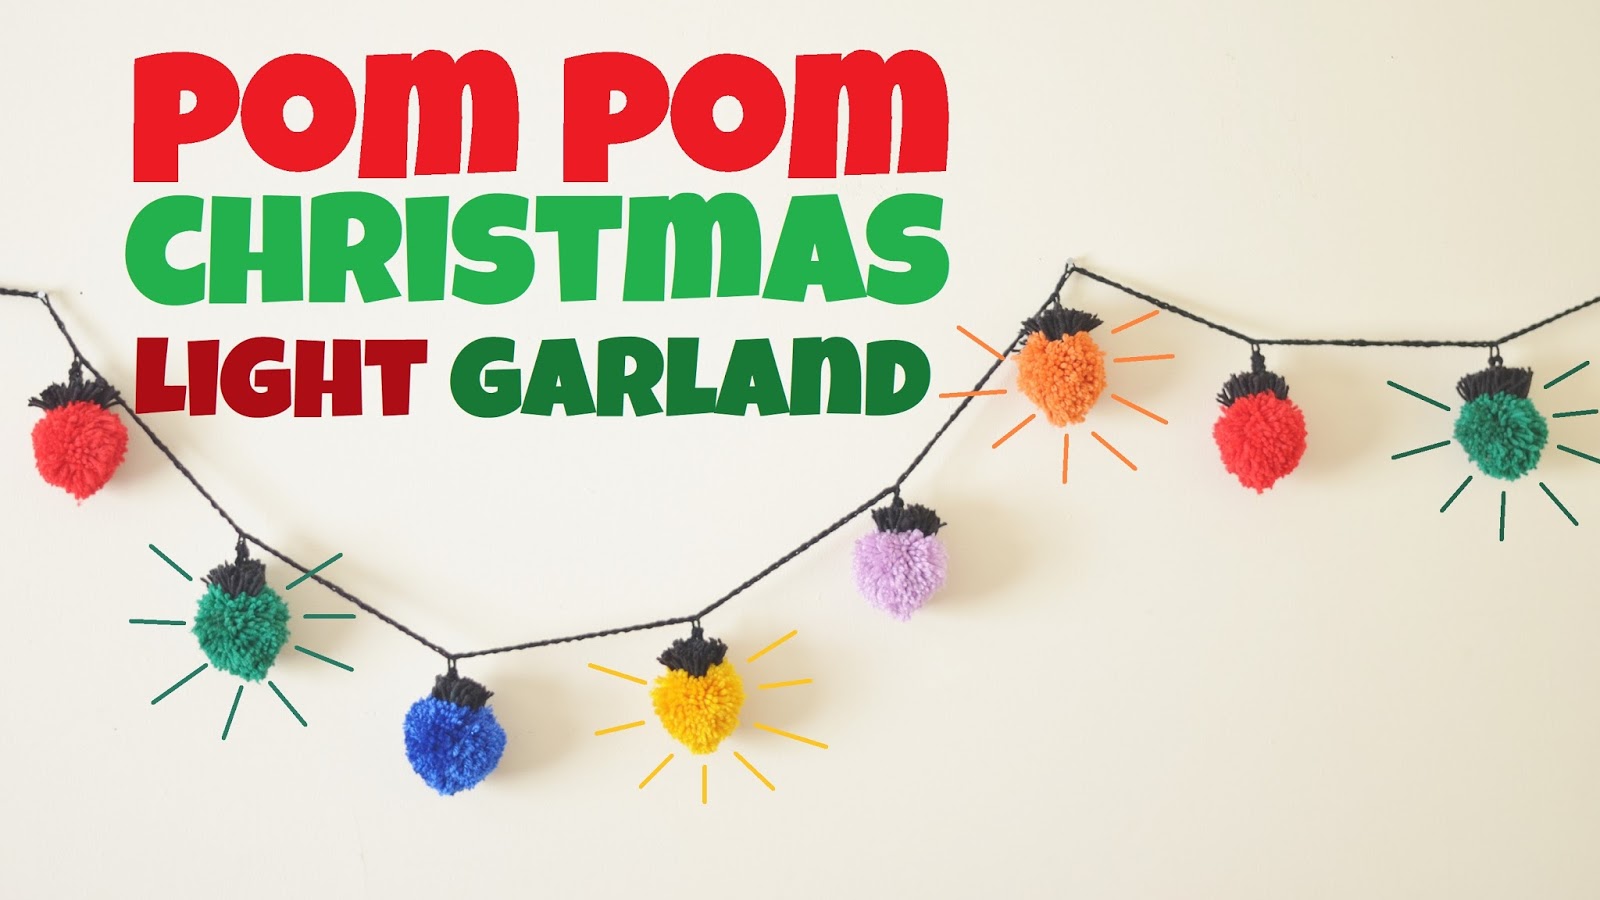 Thread Your Own Pom Poms, Create Christmas, Pom Pom Garland